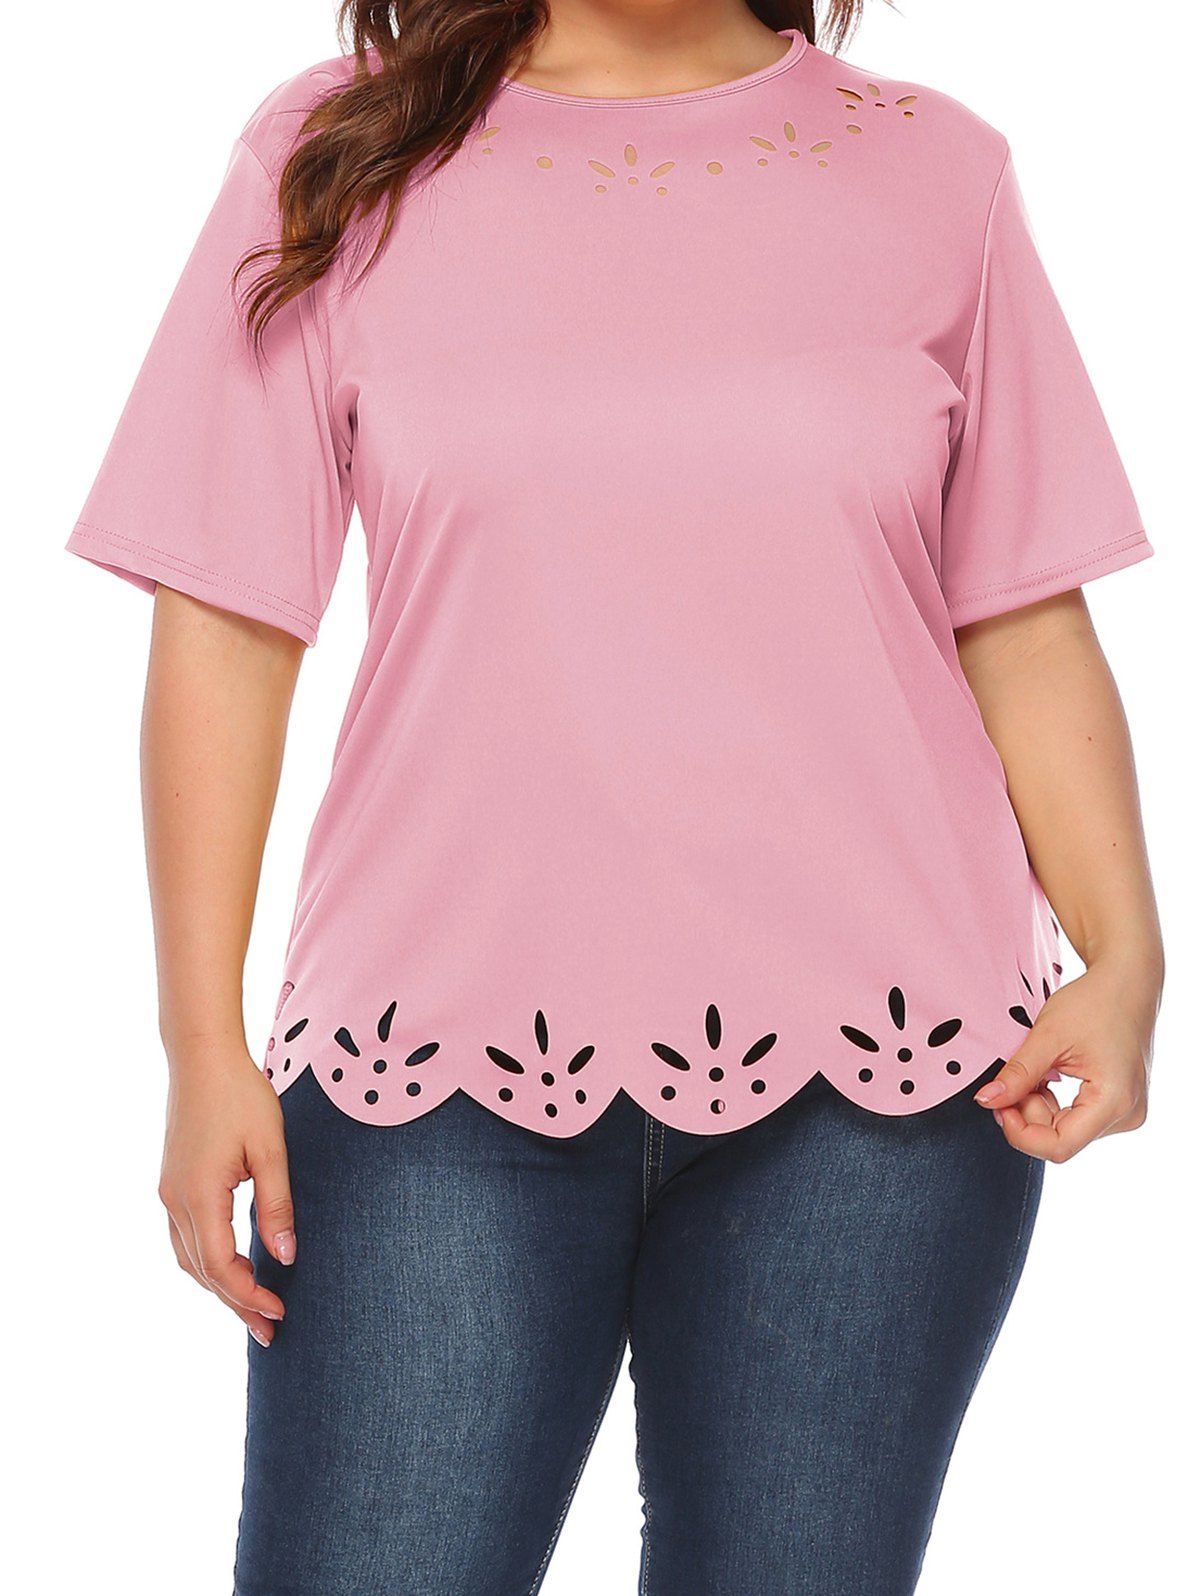 T-shirt Décontracté Festonné Découpé en Couleur Unie de Grande Taille - Rose clair 4XL